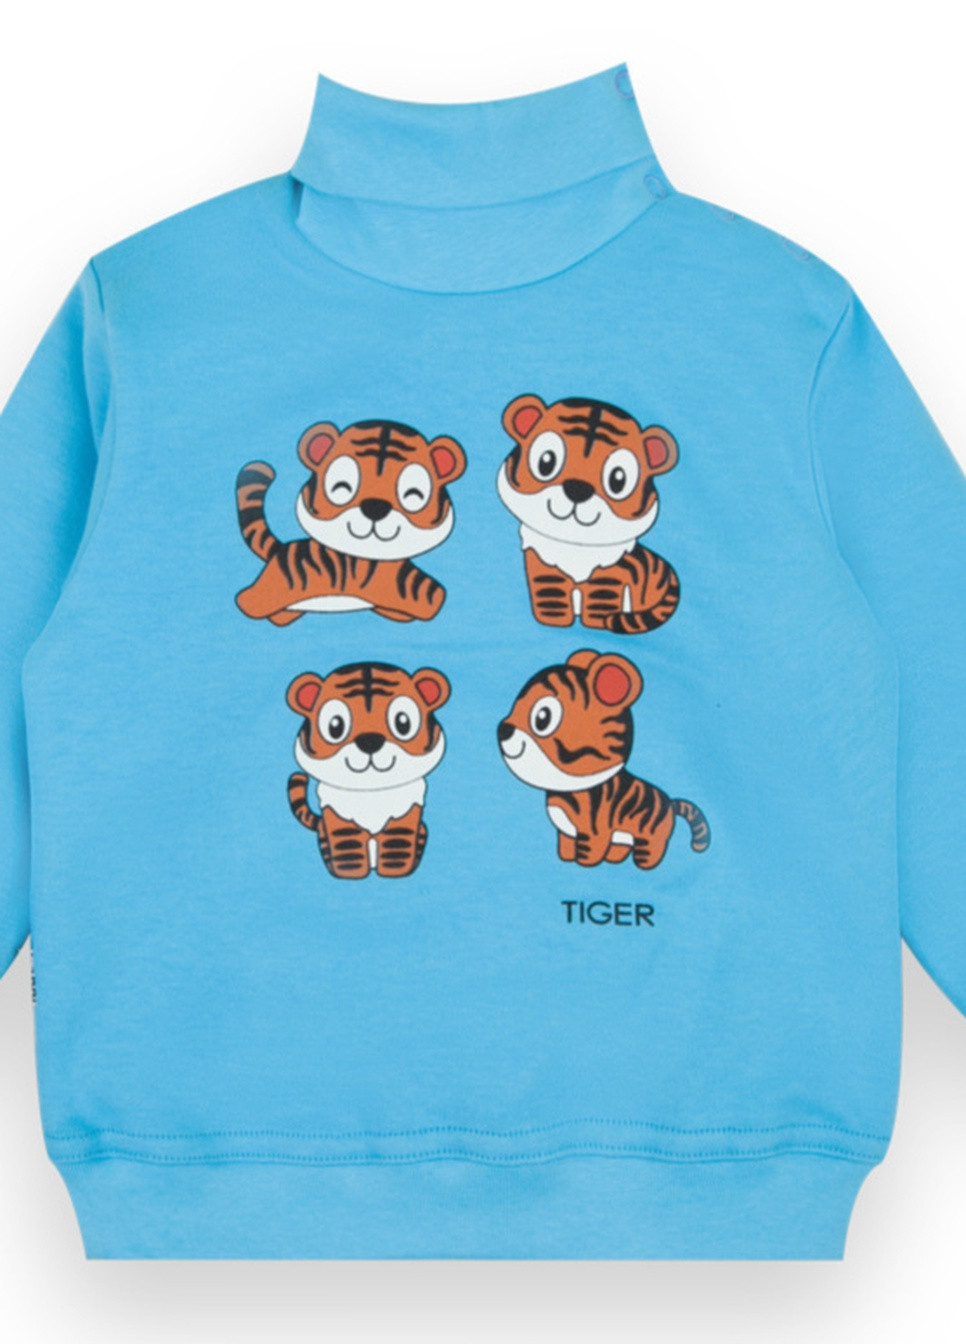 Голубой демисезонный детский свитер для мальчика sv-21-45-1 *tiger* Габби